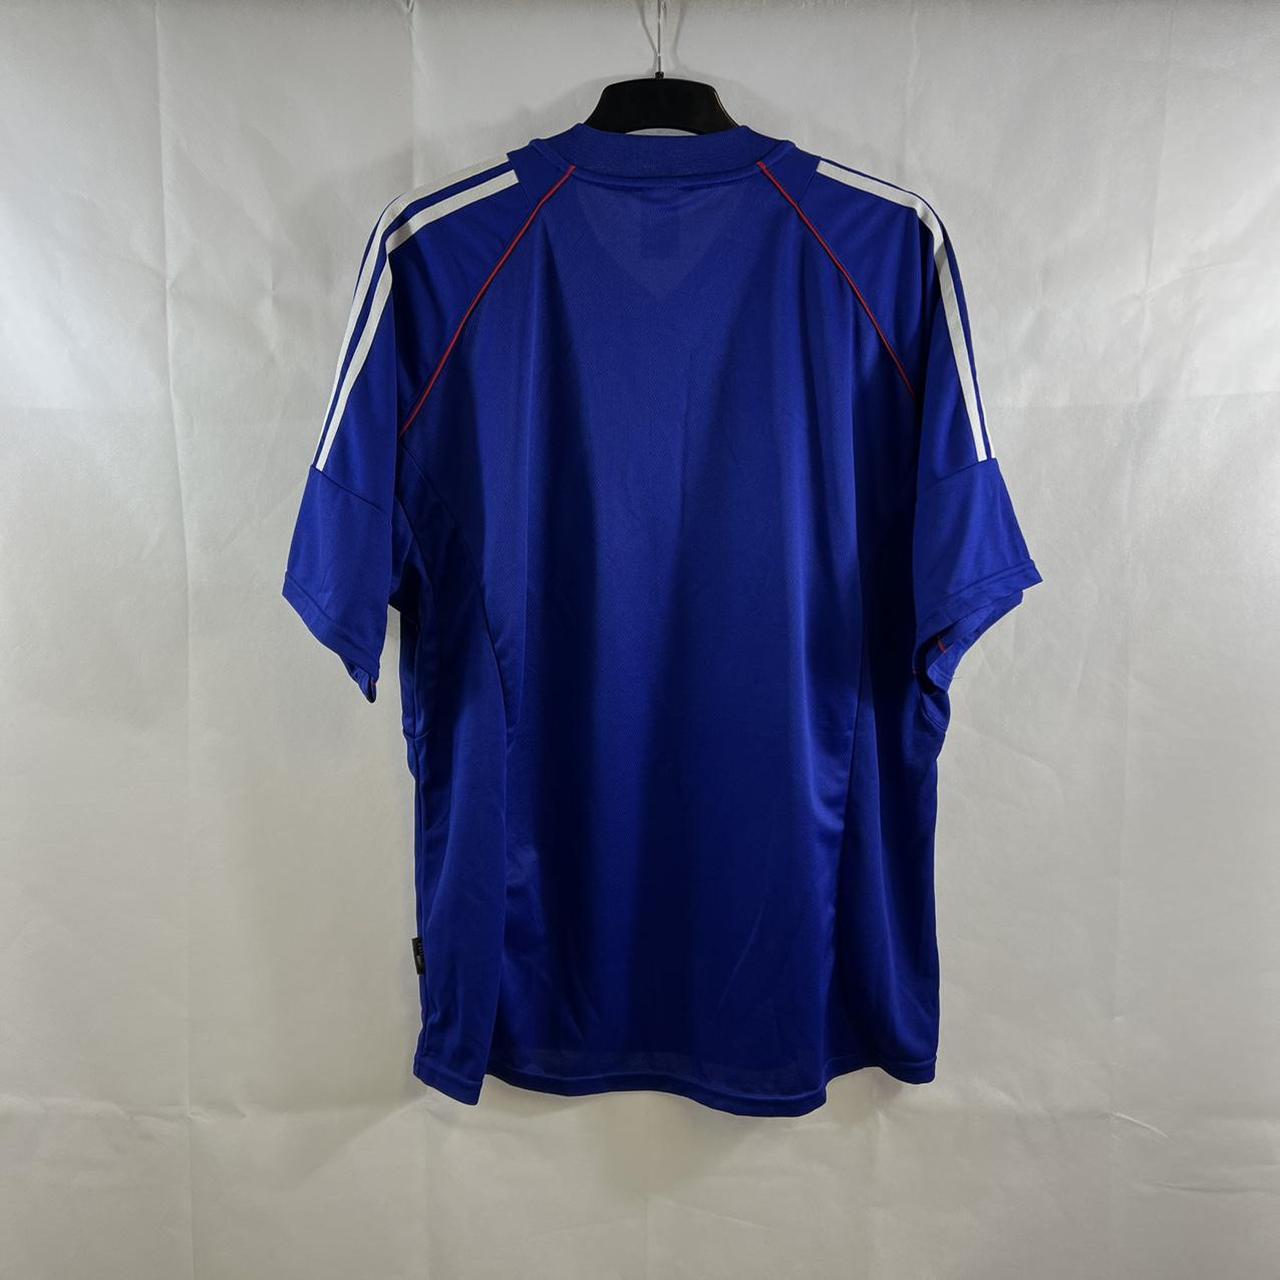 Japan Home Football Shirt 2002/04 Adults XXL Adidas... - Depop